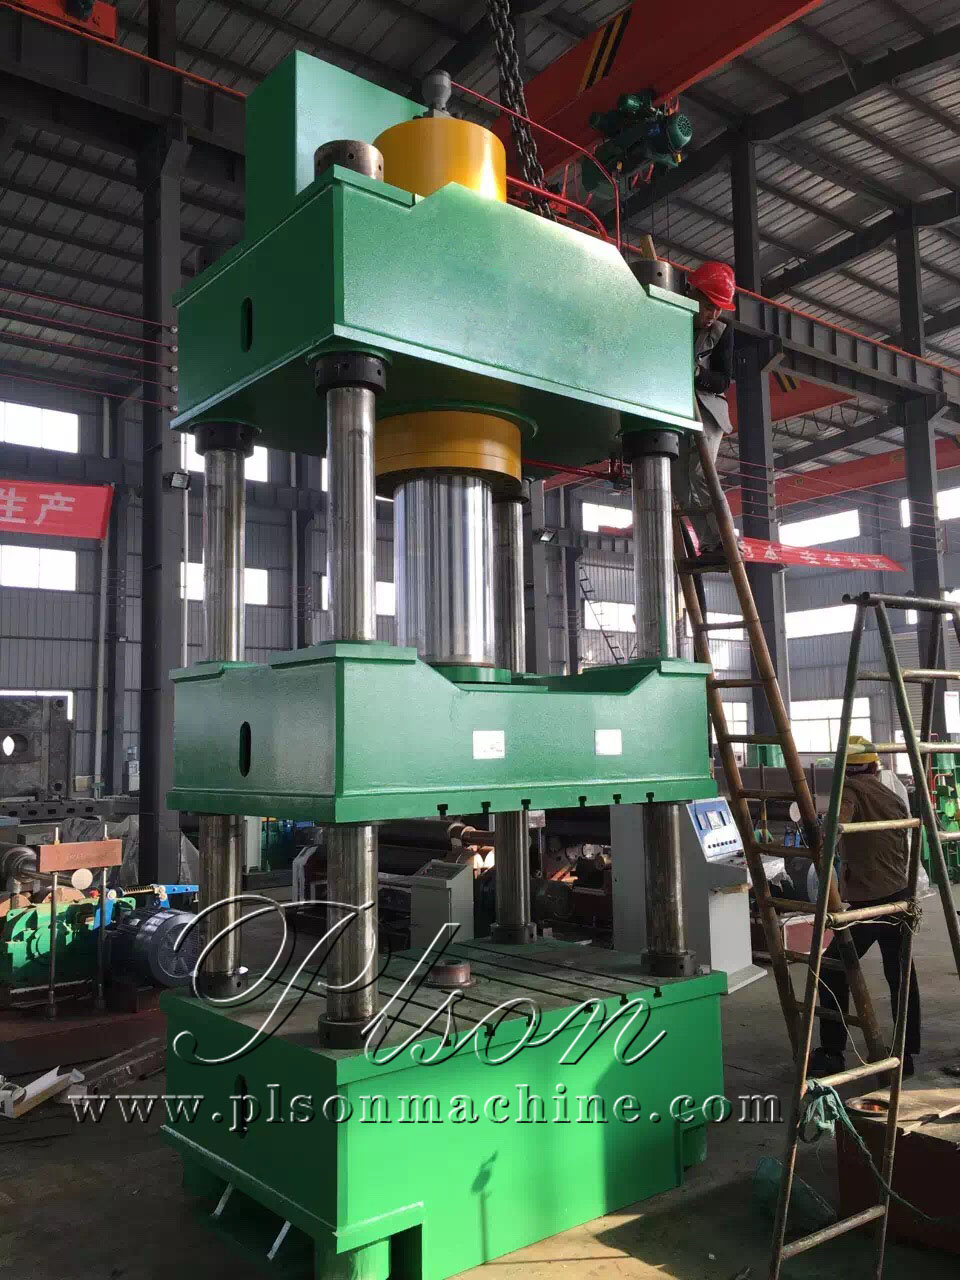 Y32 -100 four-column hydraulic press machine